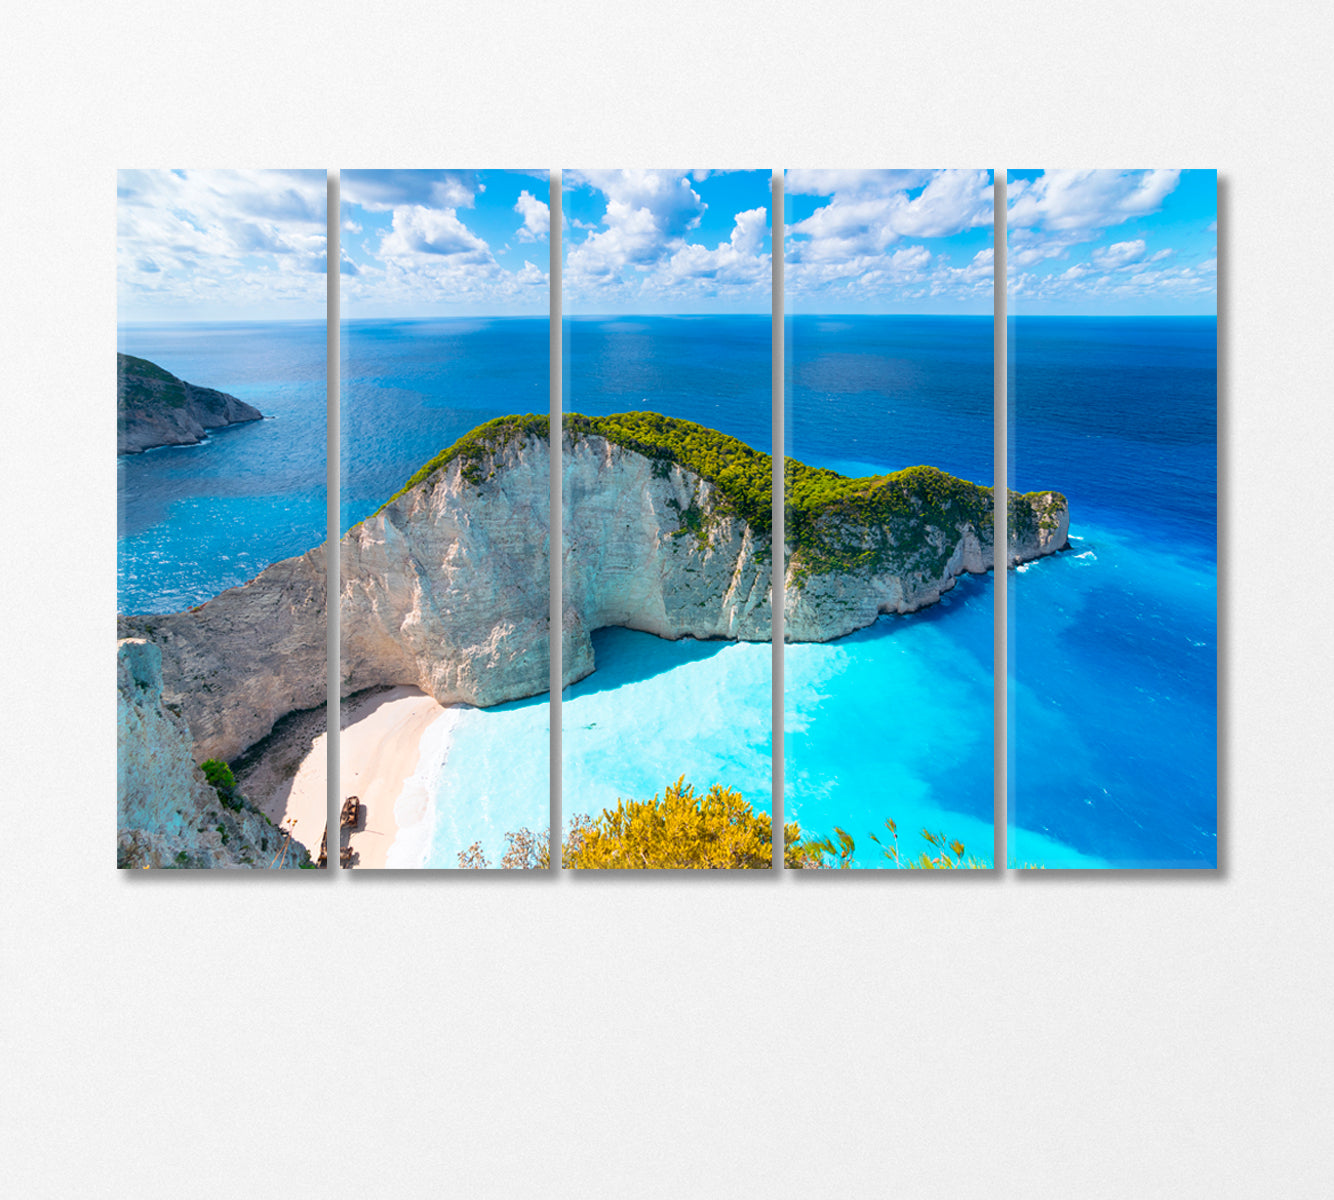 Zakynthos Island Greece Canvas Print-Canvas Print-CetArt-5 Panels-36x24 inches-CetArt